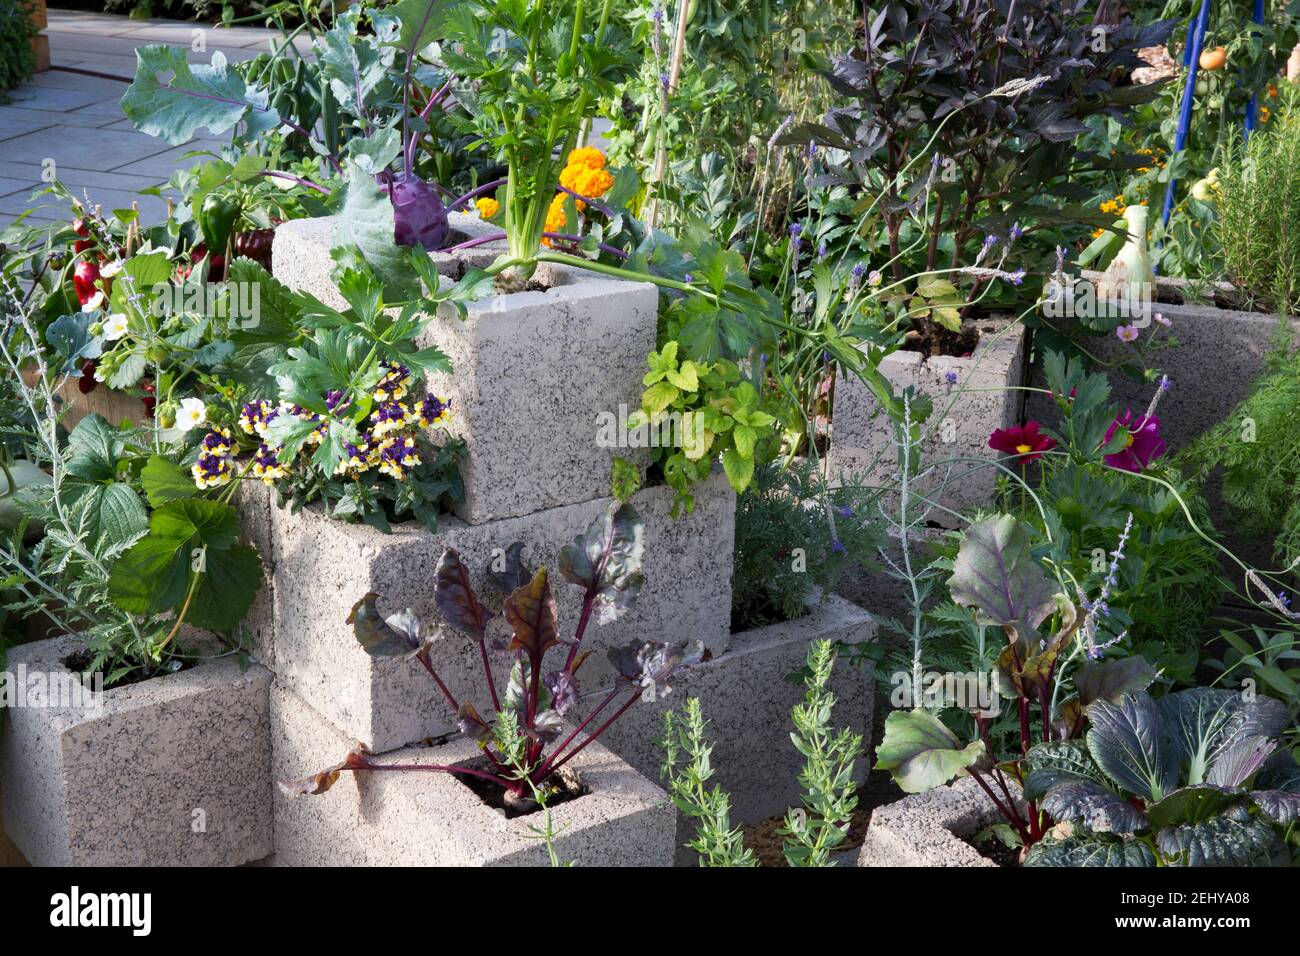 Eine kleine Stadt platzsparend vertikale Gartenarbeit Bio-Gemüse und Kräutergarten mit Pflanzen wächst in alten Brise Blöcke verwendet Als Container Upcycling Stockfoto